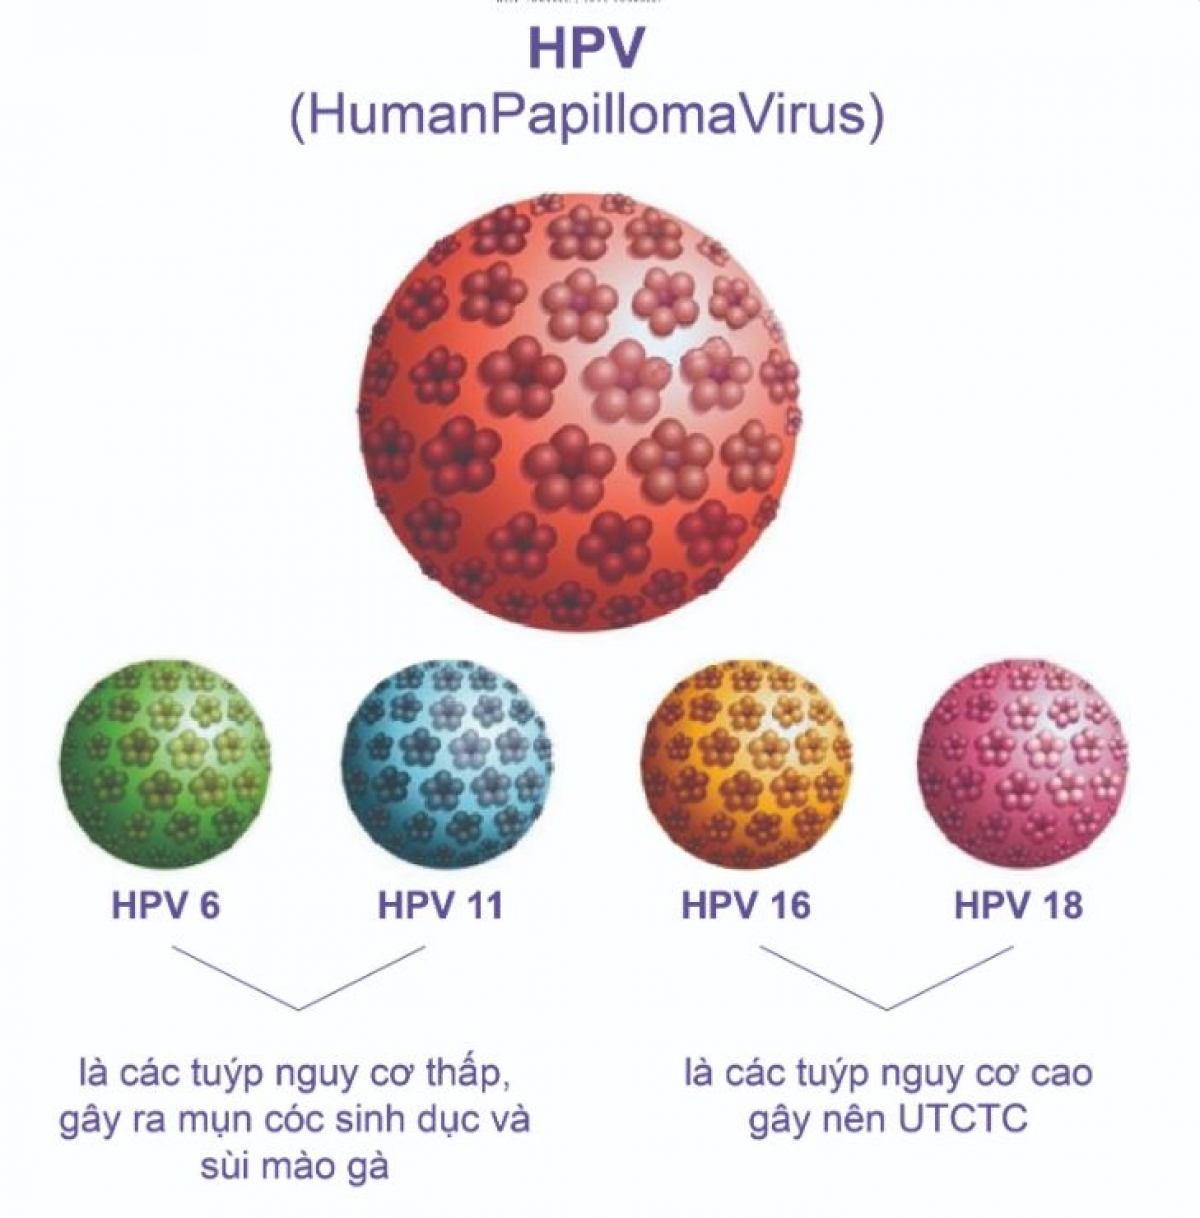 Các type HPV phổ biến gây bệnh cho các cơ quan sinh dục